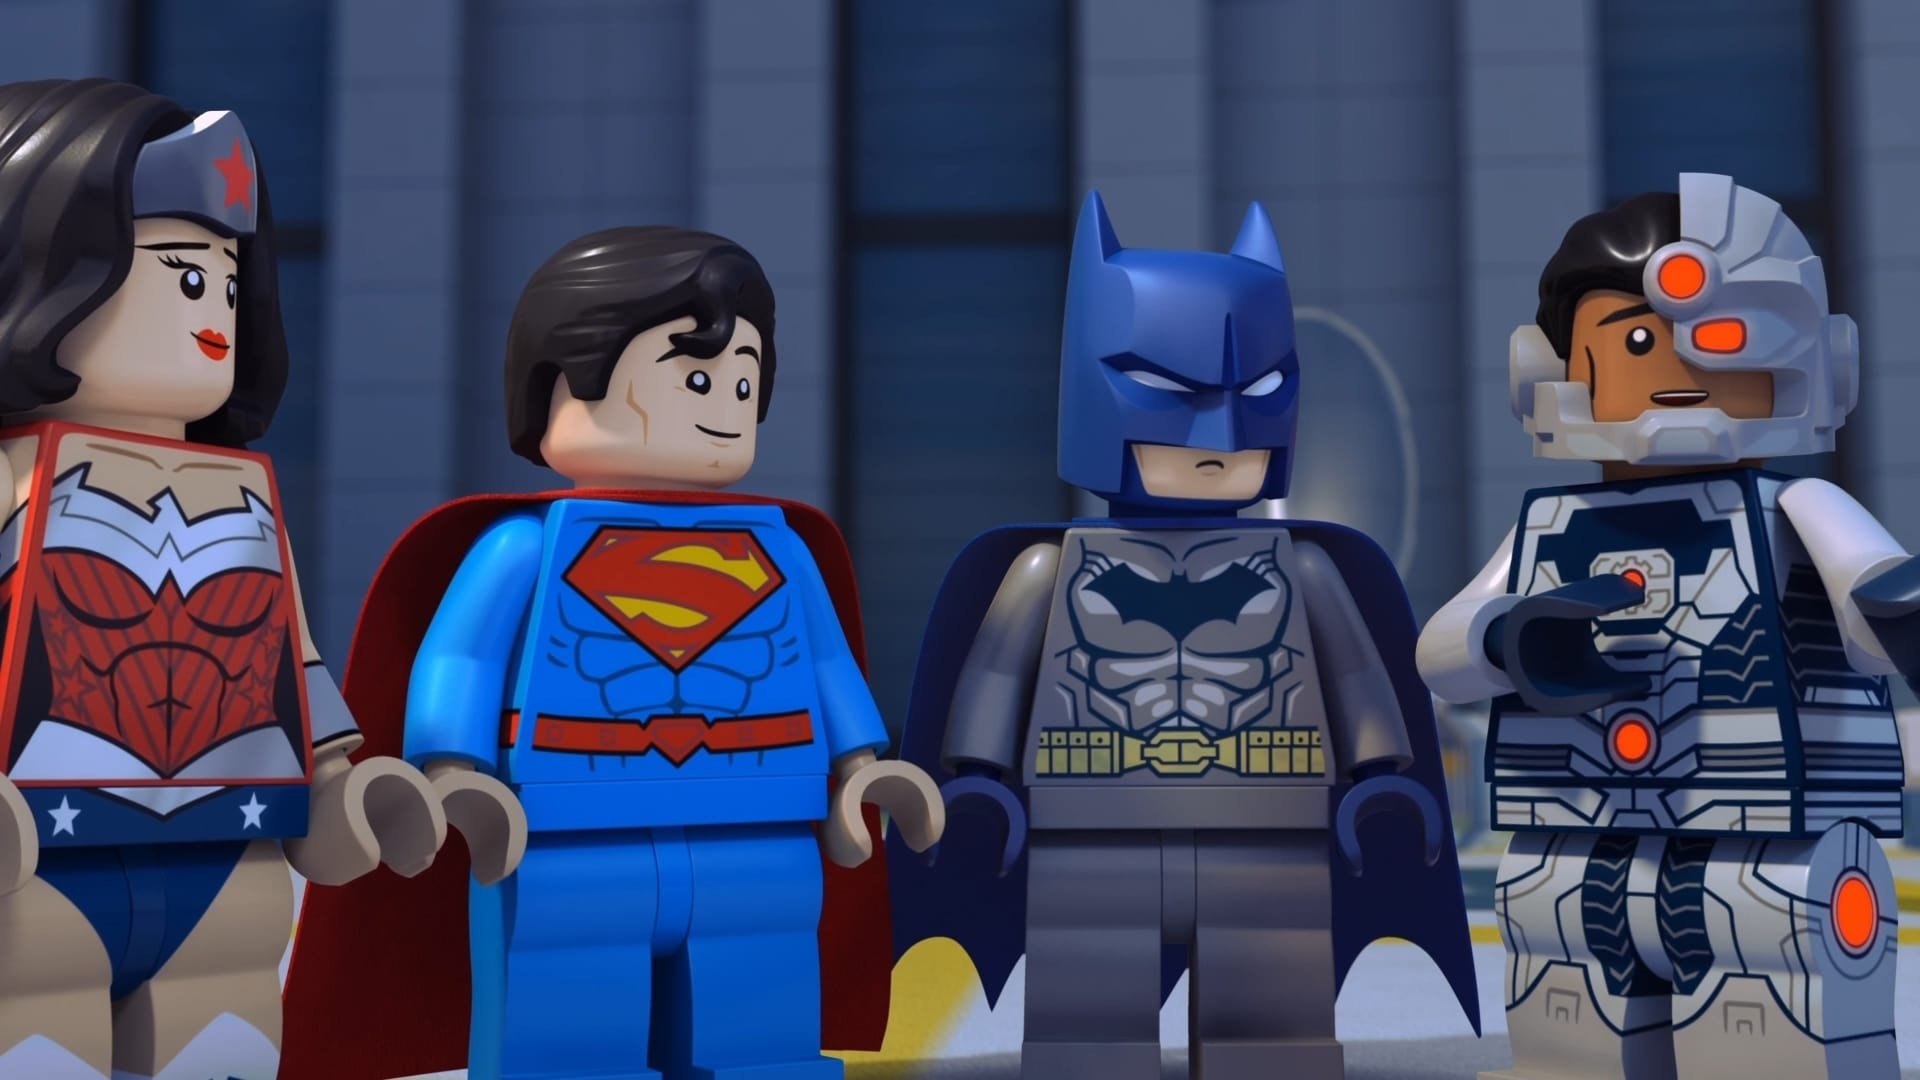 ლეგო დს-ის კომიქსების სუპერ გმირები: სამართლიანი ლიგა: კოსმიური შეჯახება / LEGO DC Comics Super Heroes: Justice League: Cosmic Clash